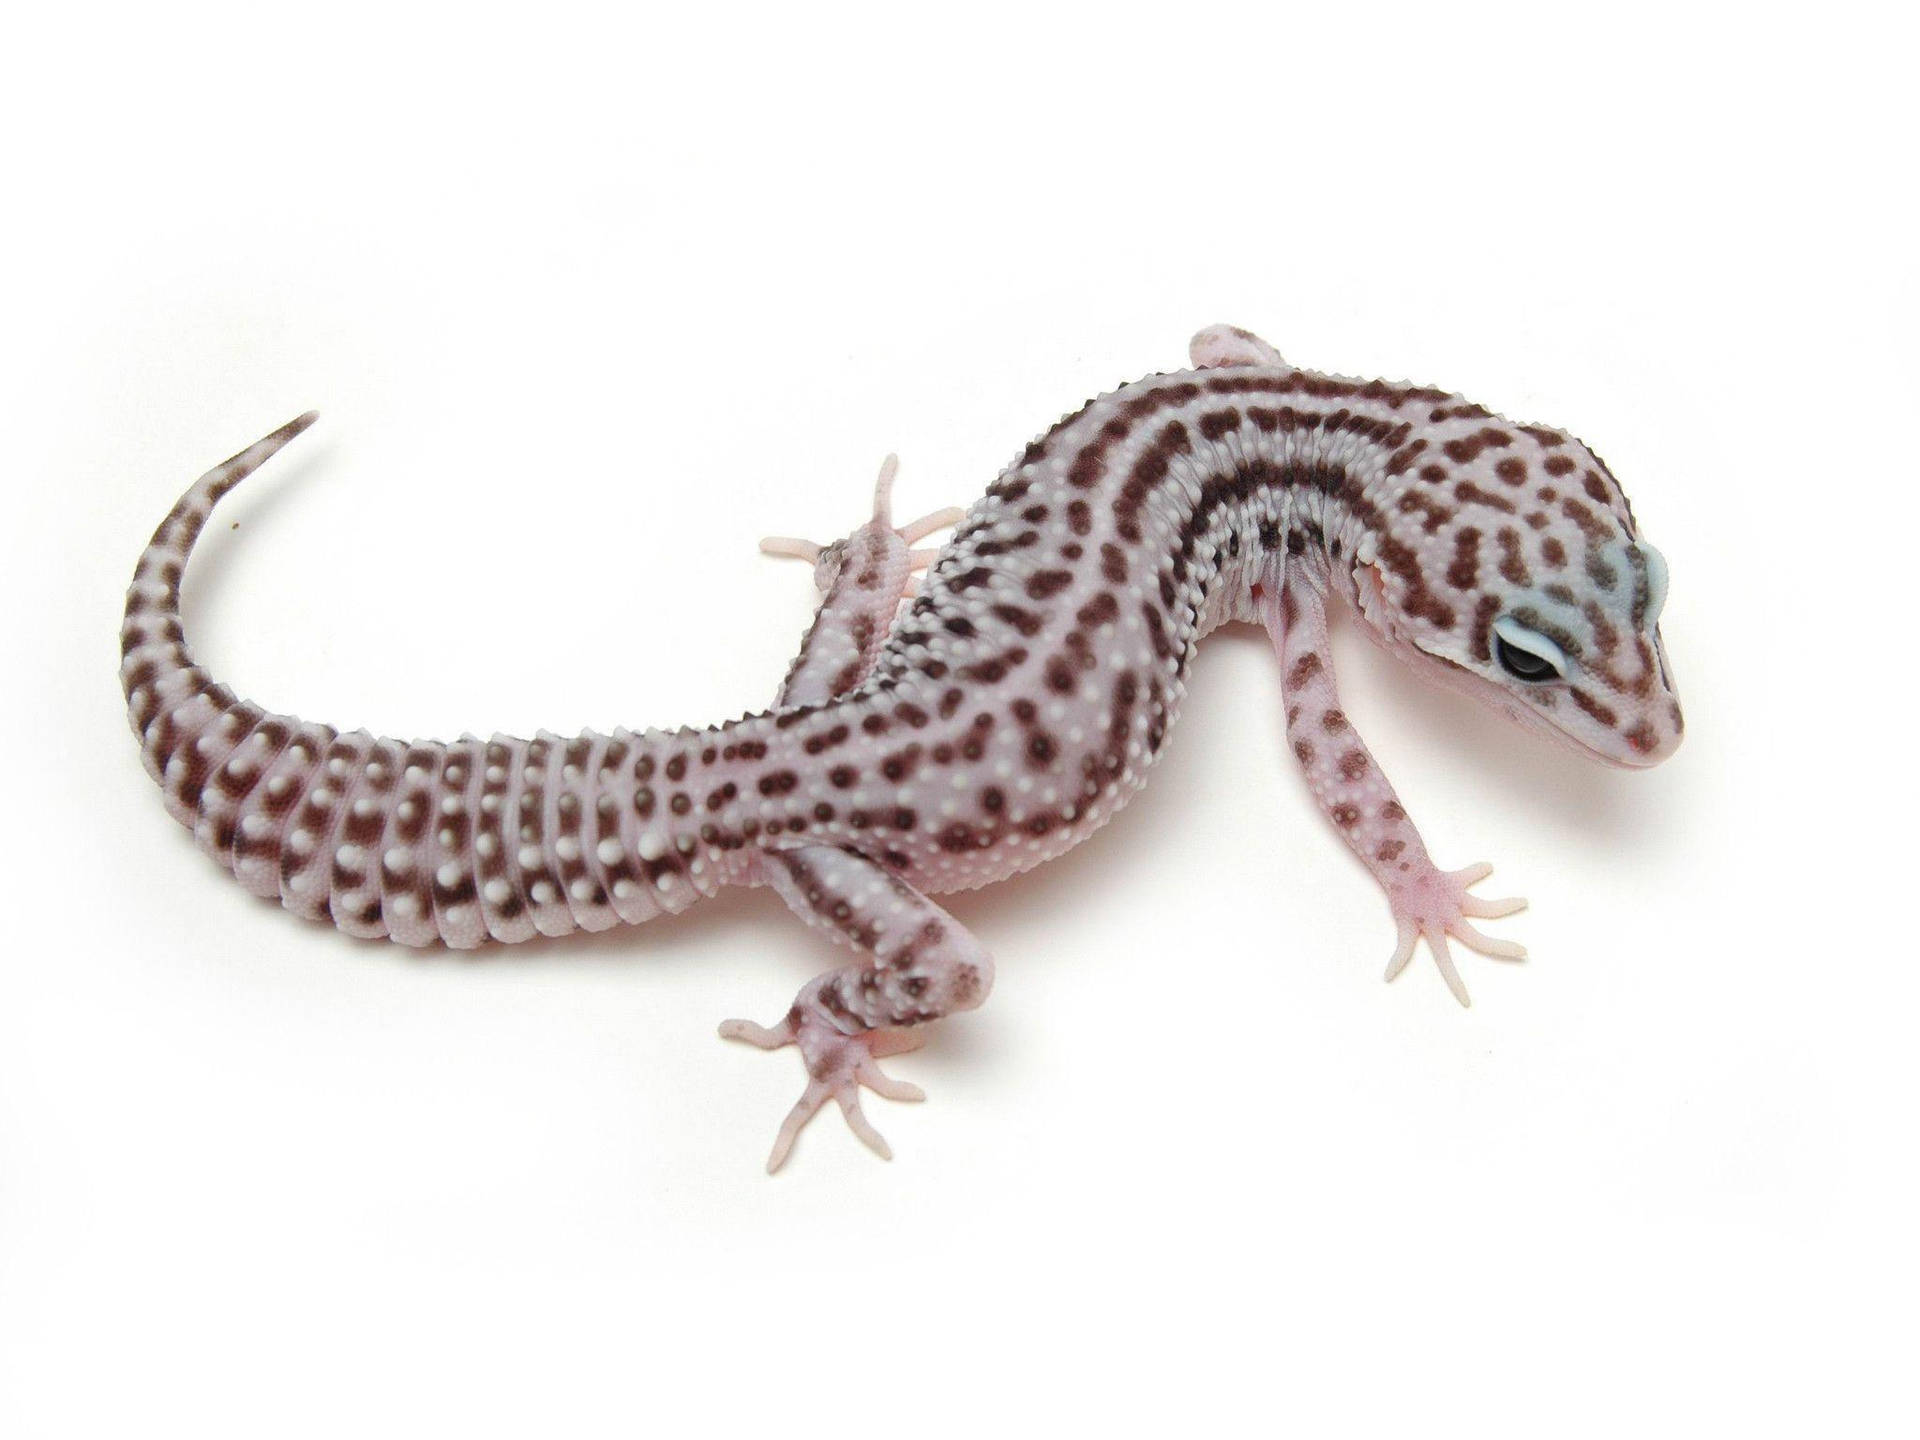 Leopard Gecko S Body Position Wallpaper